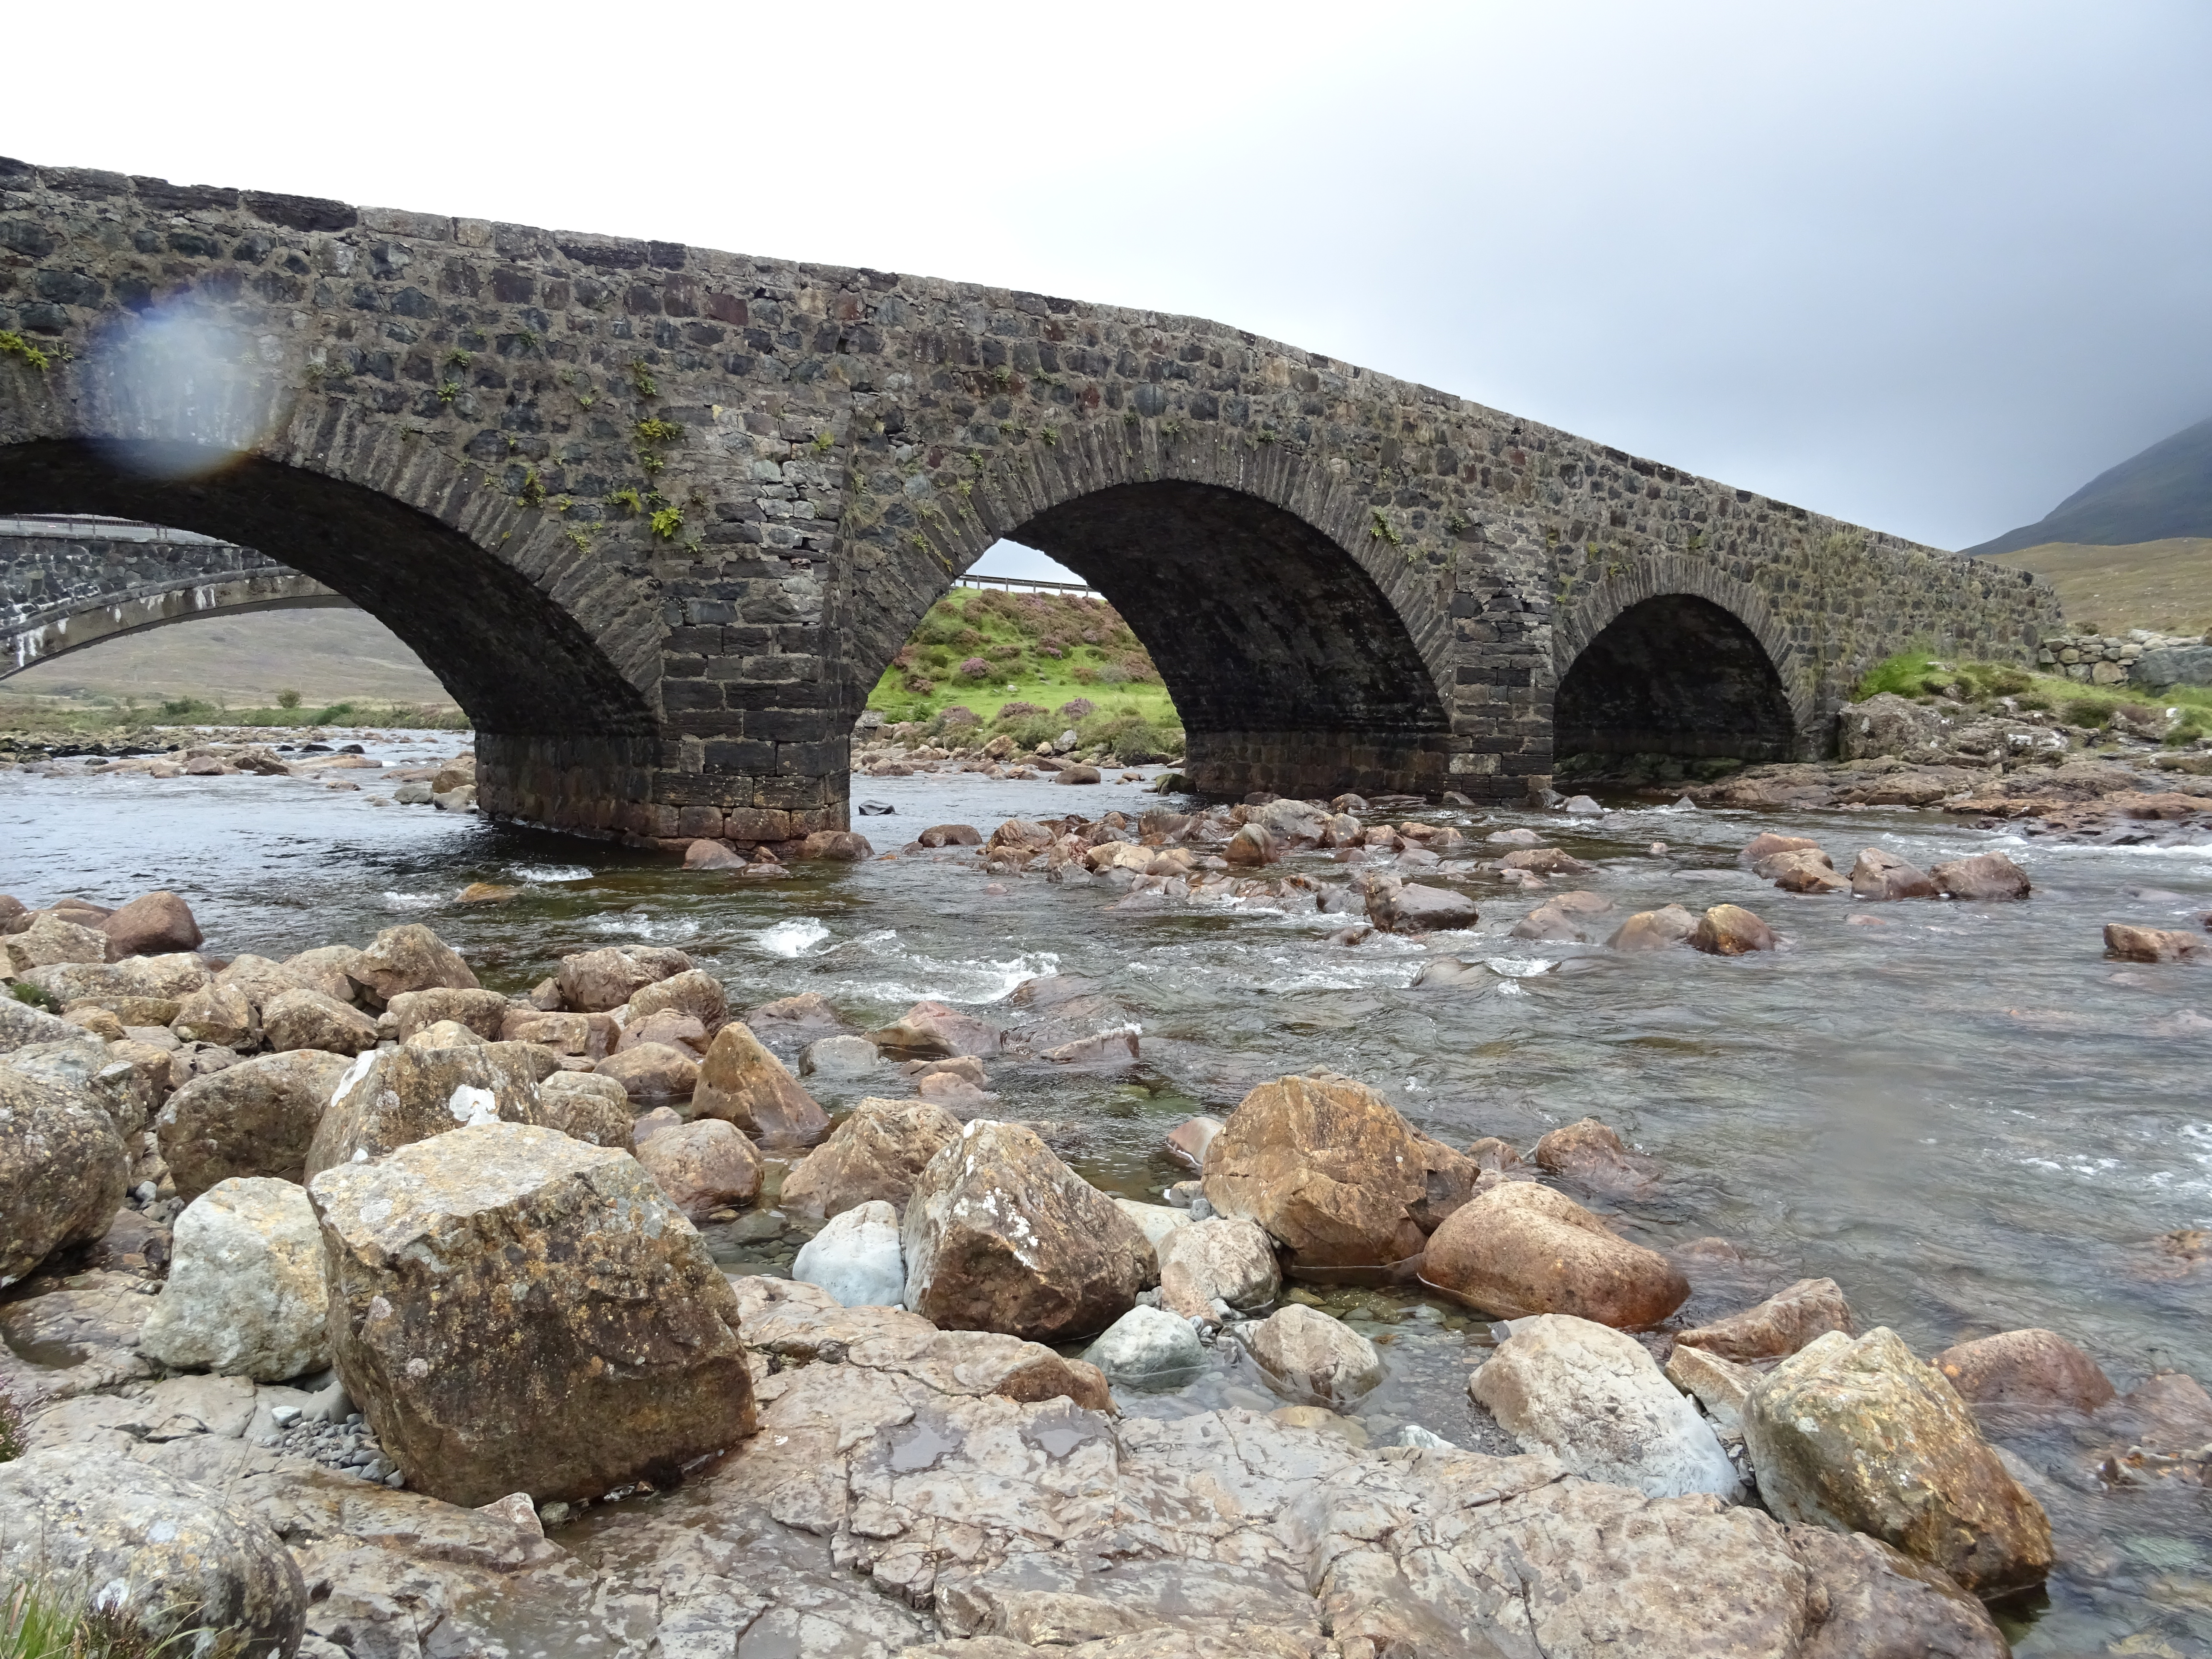 Sligachan Bridge - Tours of Scotland